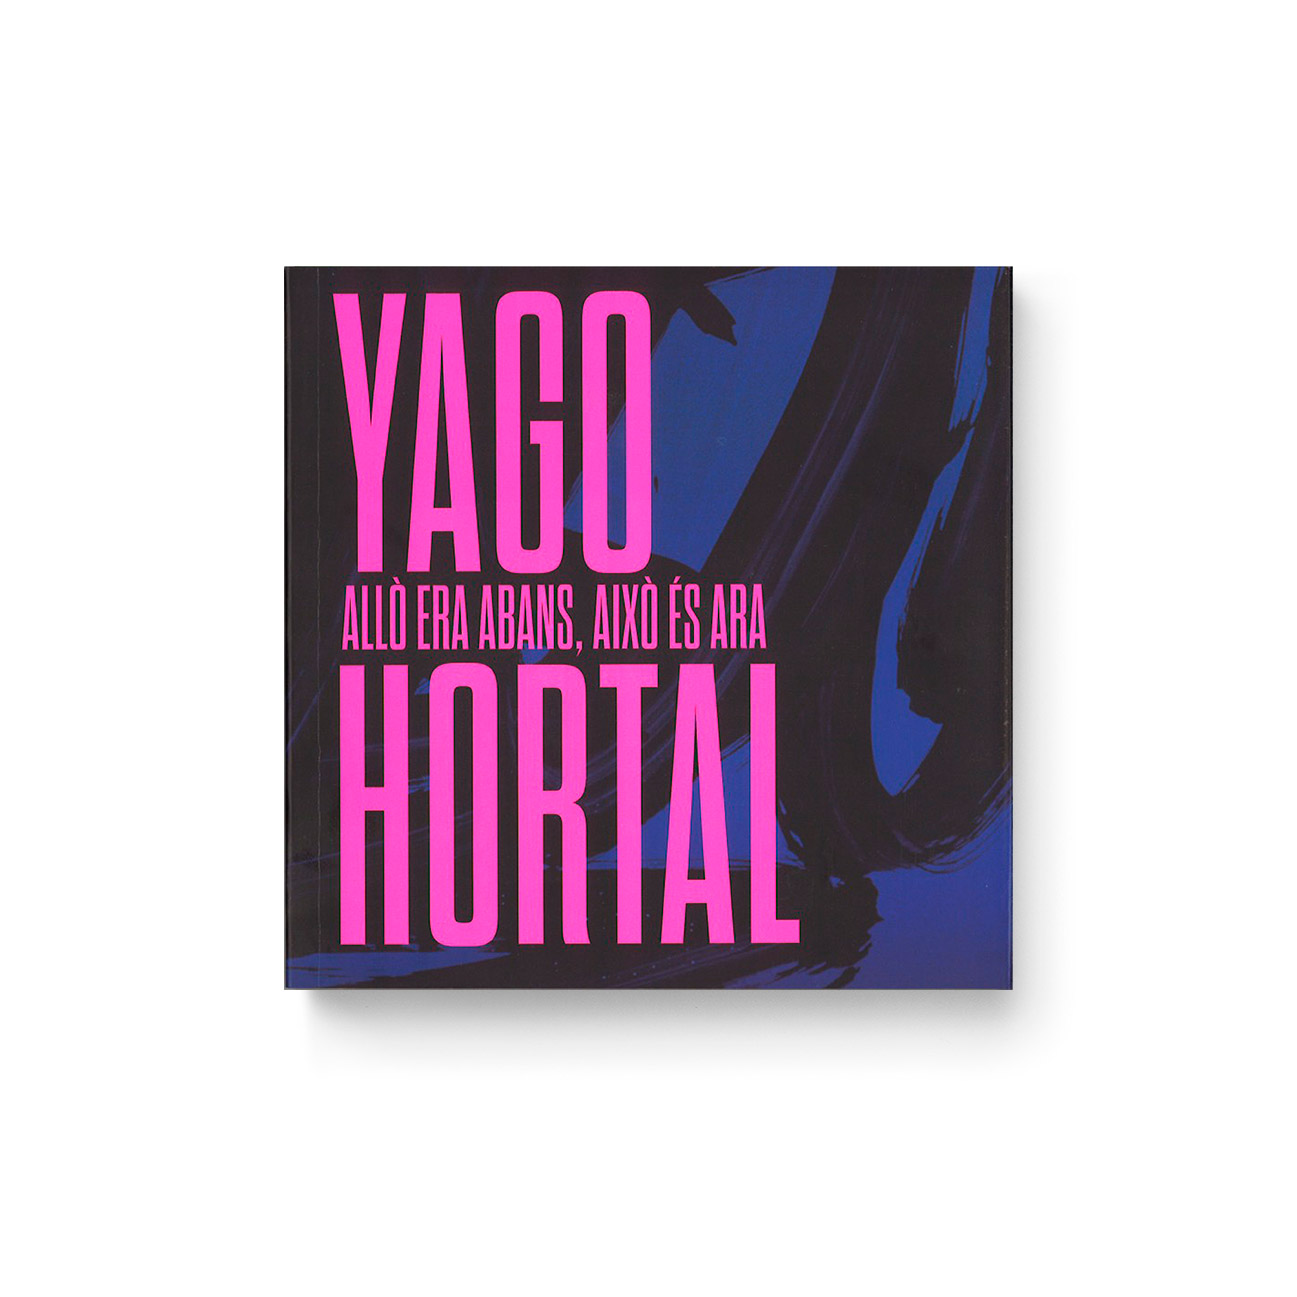 Yago Hortal - Allò era abans, això és ara - Cover